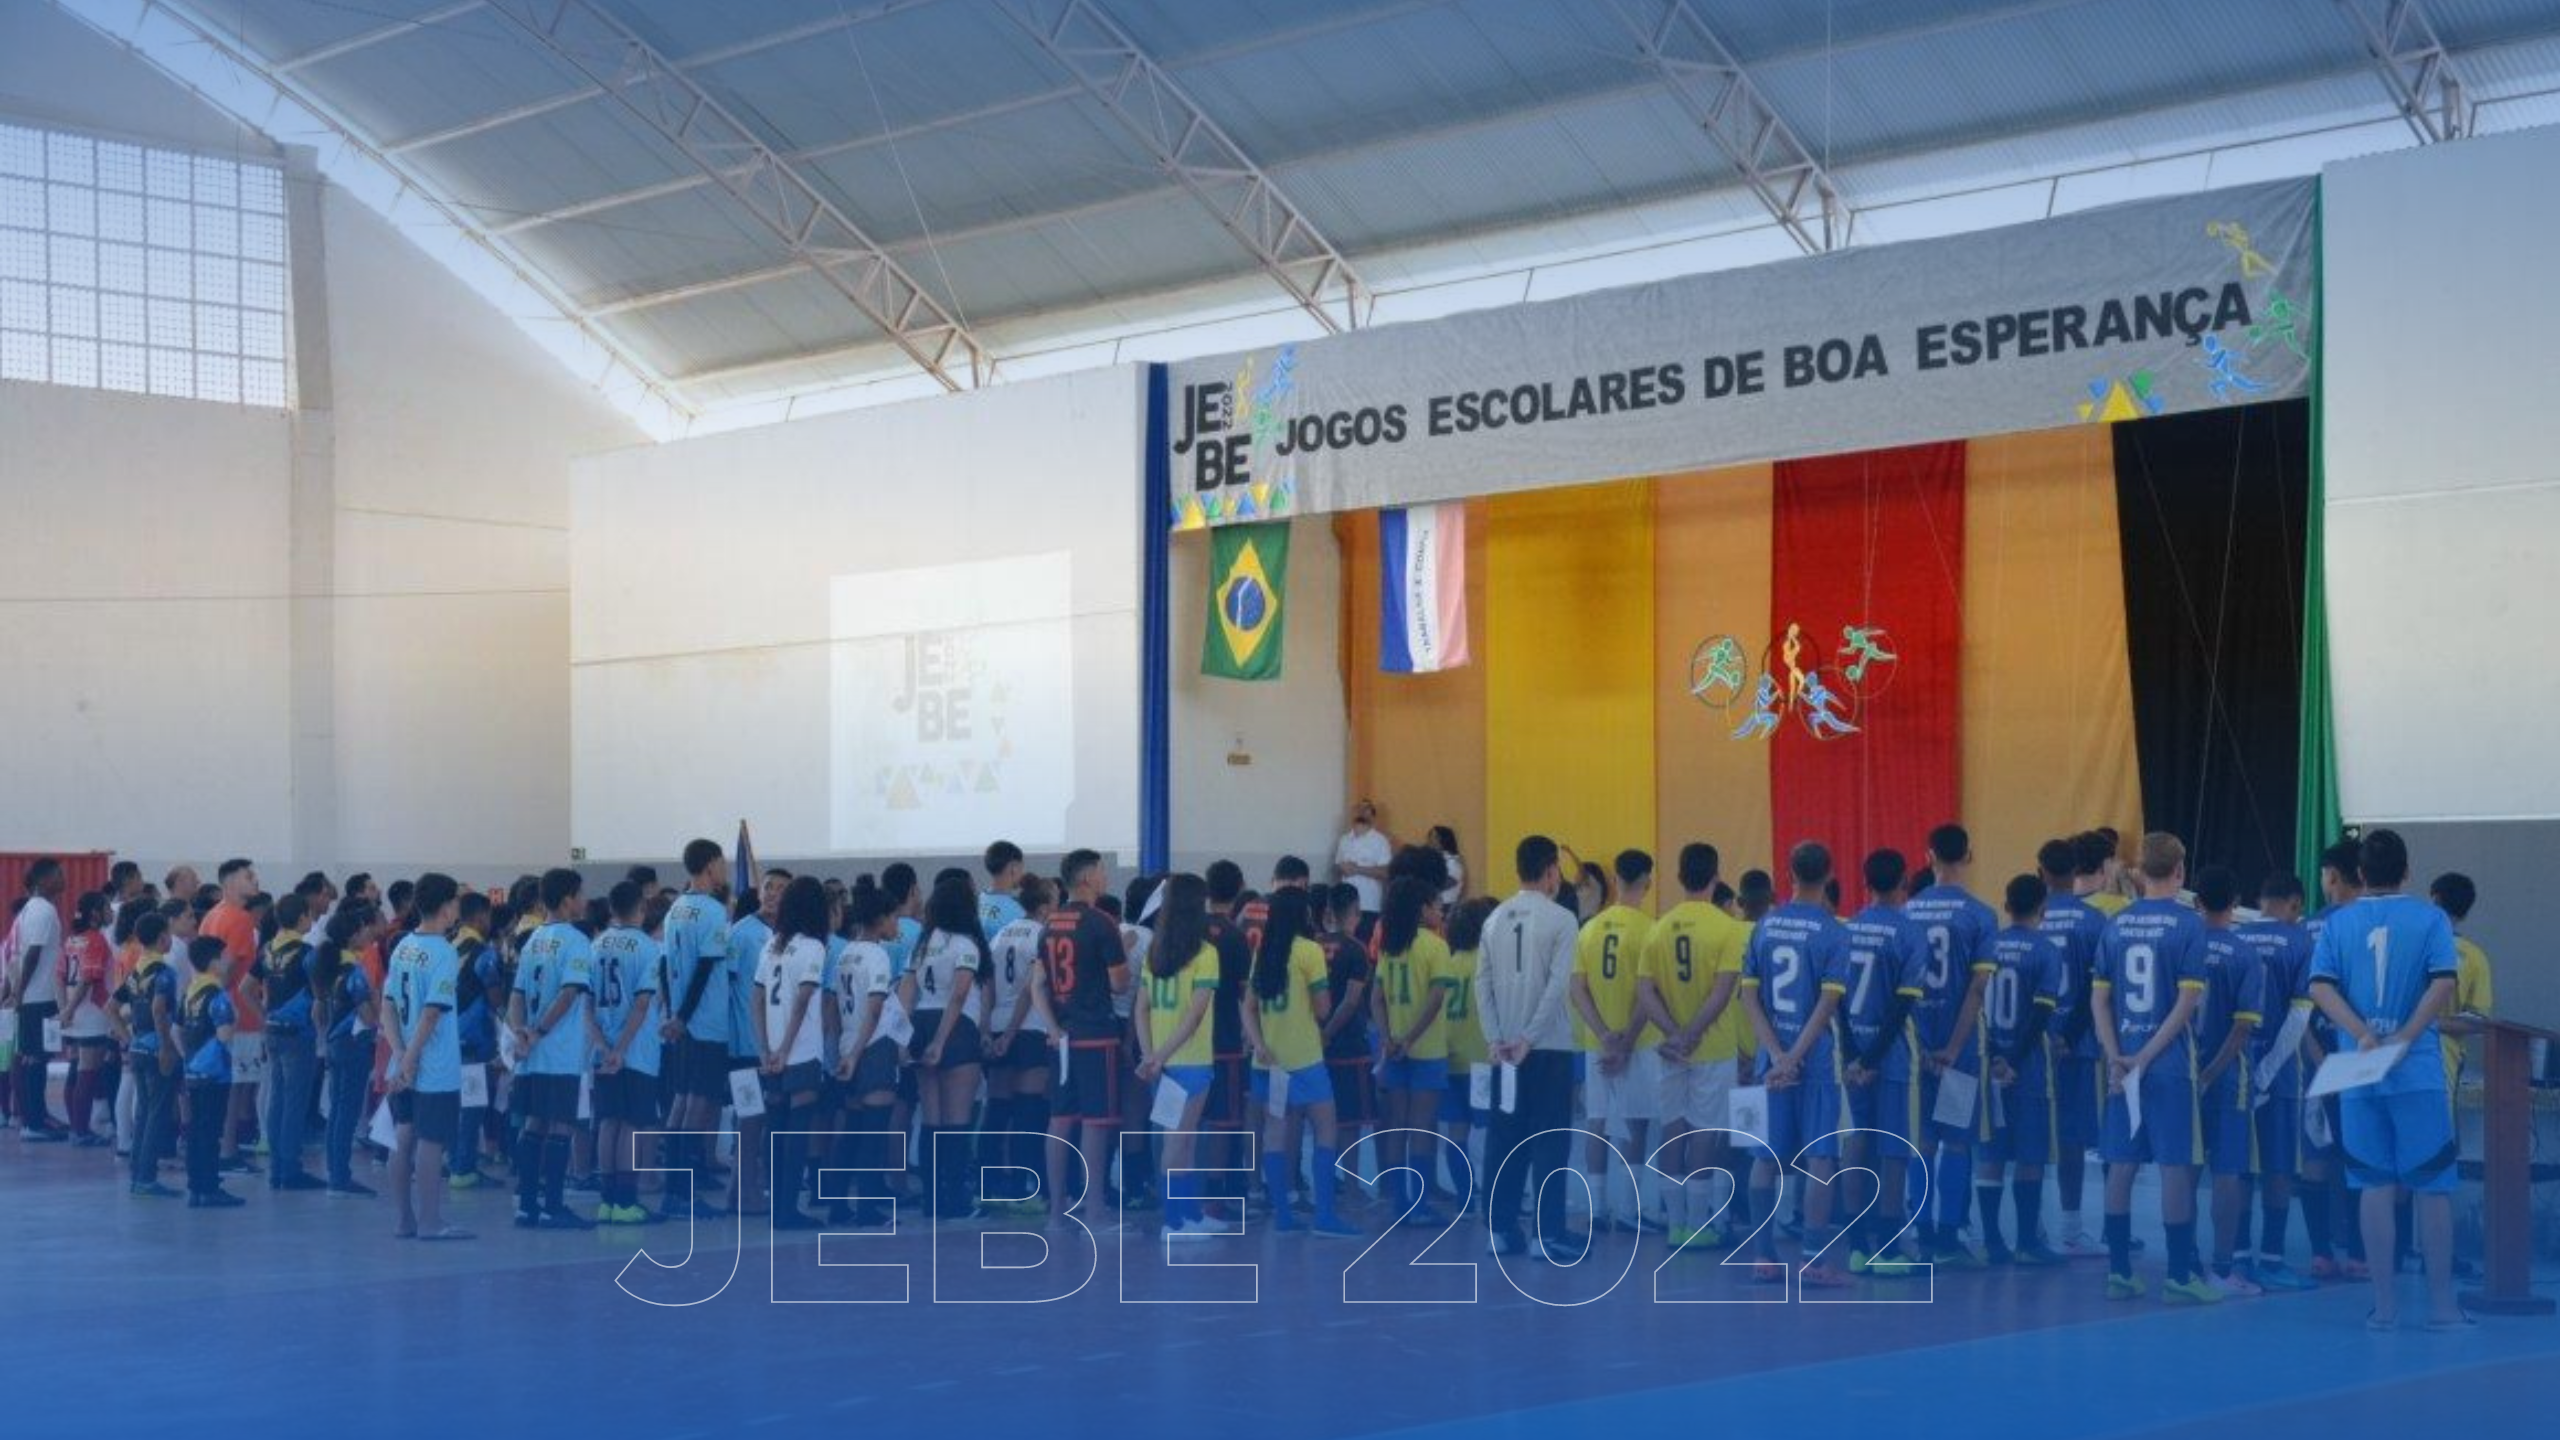 Foto da notícia: JEBE: Após 2 Anos, Jogos Escolares de Boa Esperança Estão de Volta